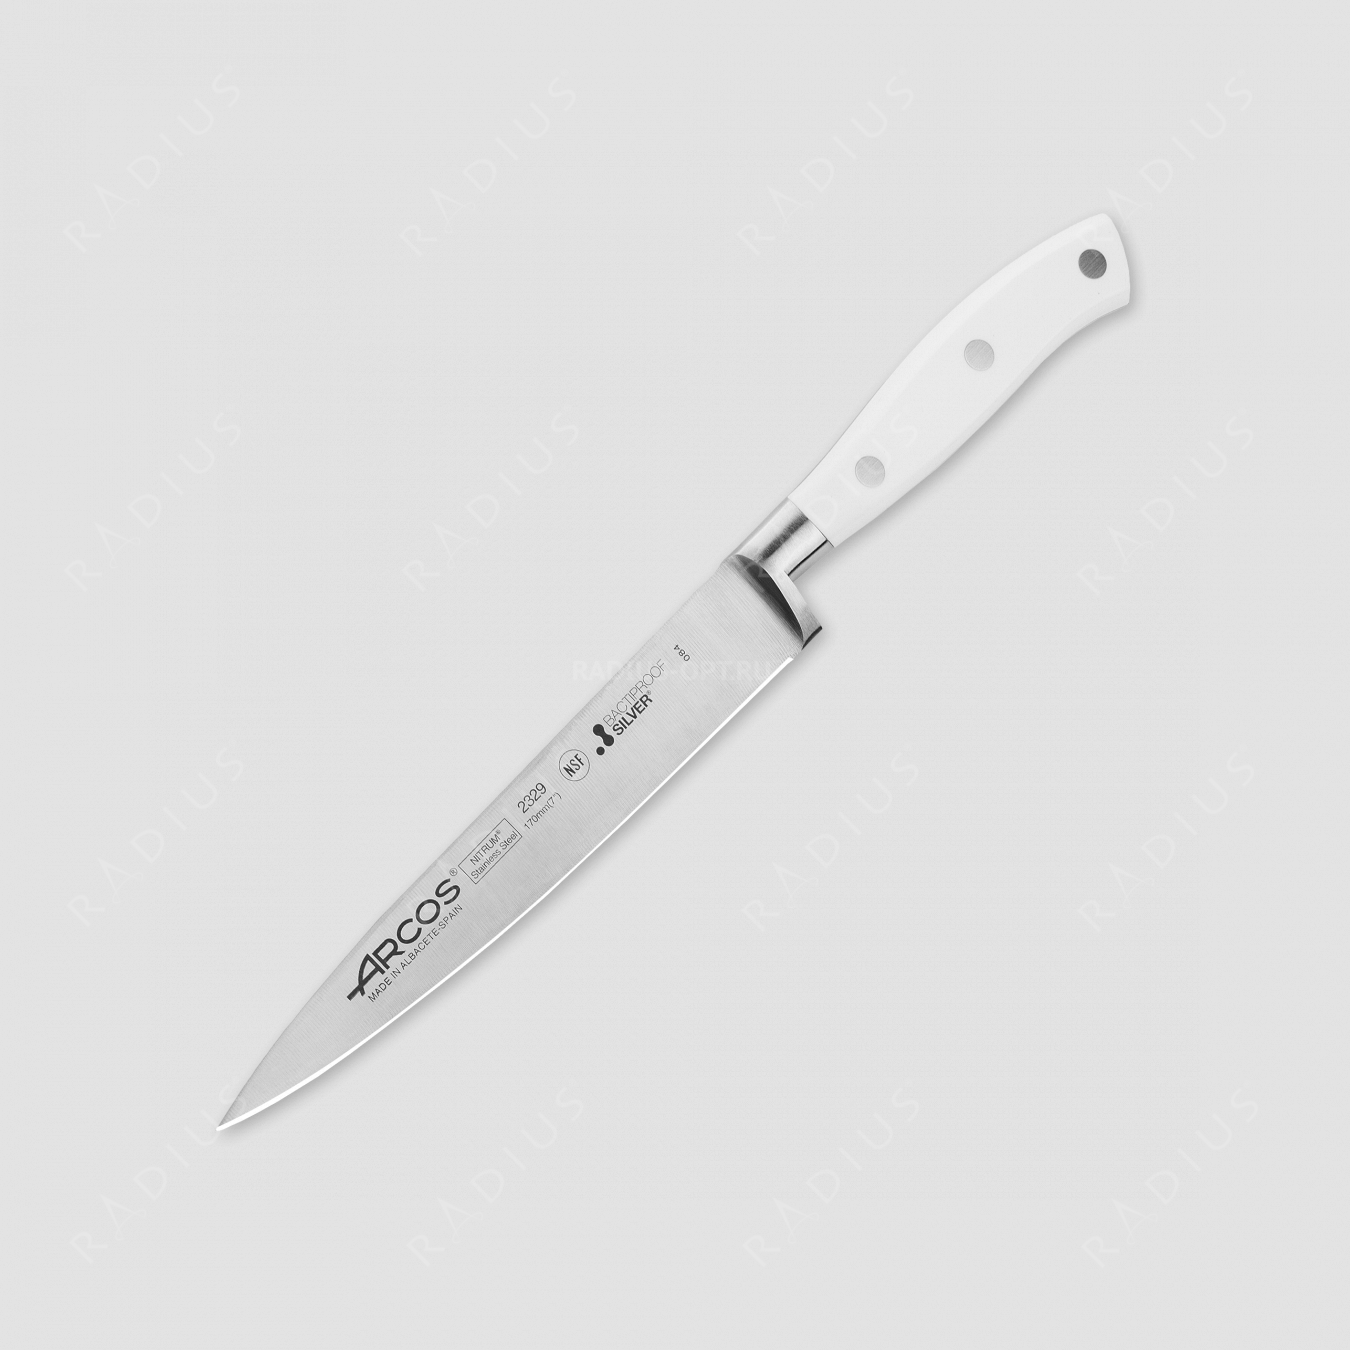 Нож кухонный для нарезки филе 17 см, серия Riviera Blanca, ARCOS, Испания